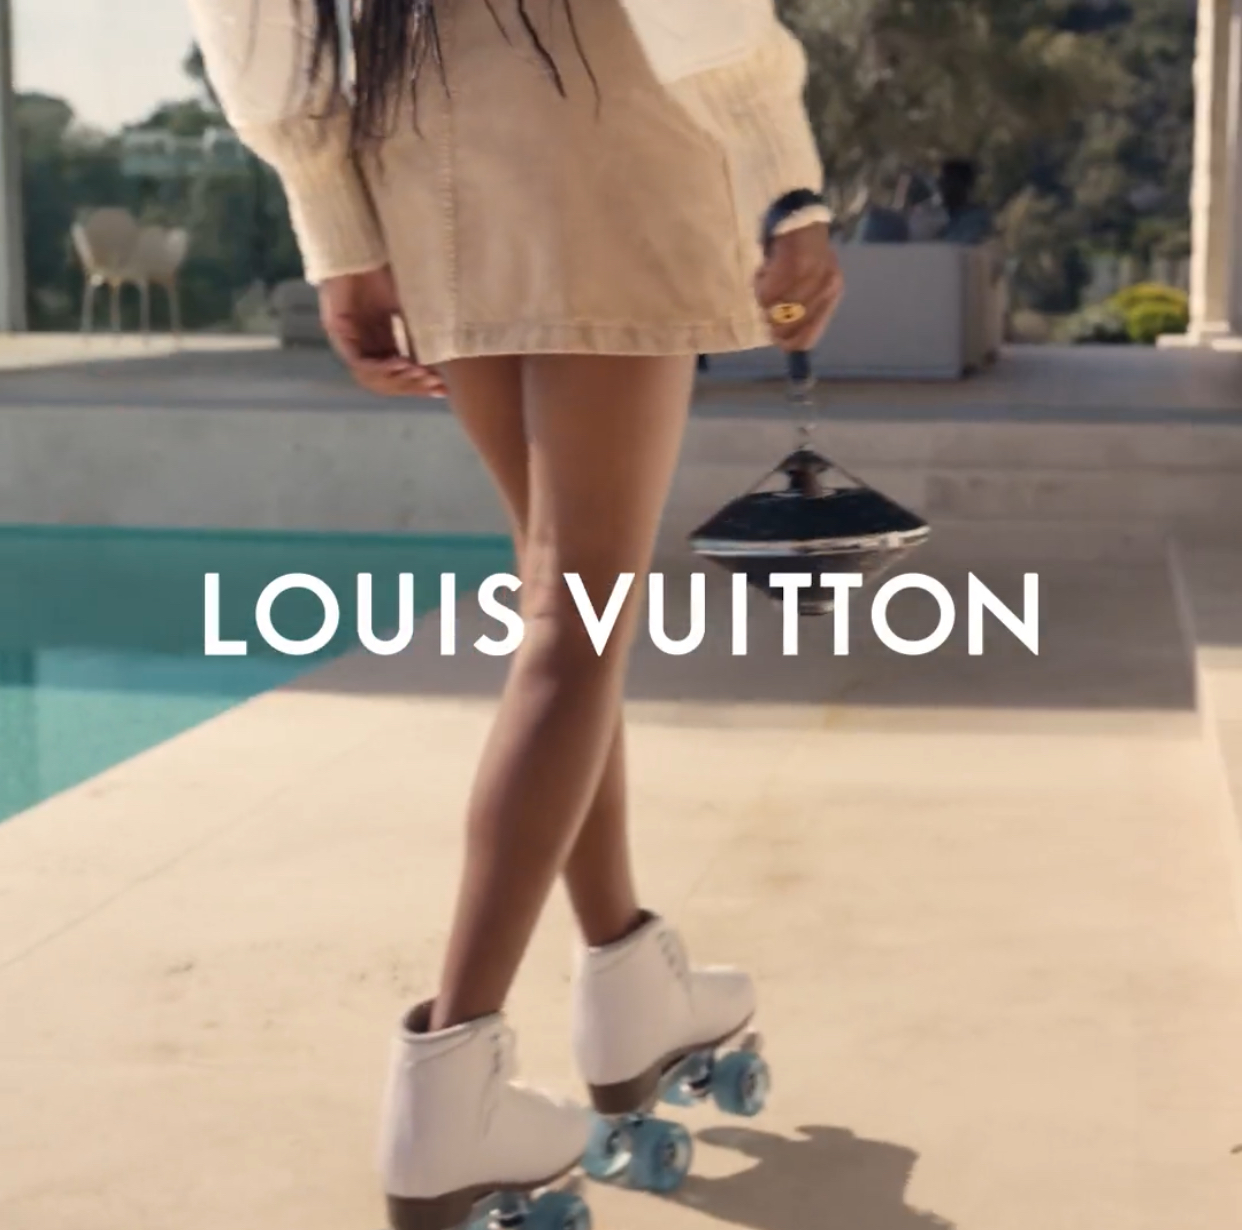 Louis Vuitton Horizon Light Up Speaker - The Luxury Editor